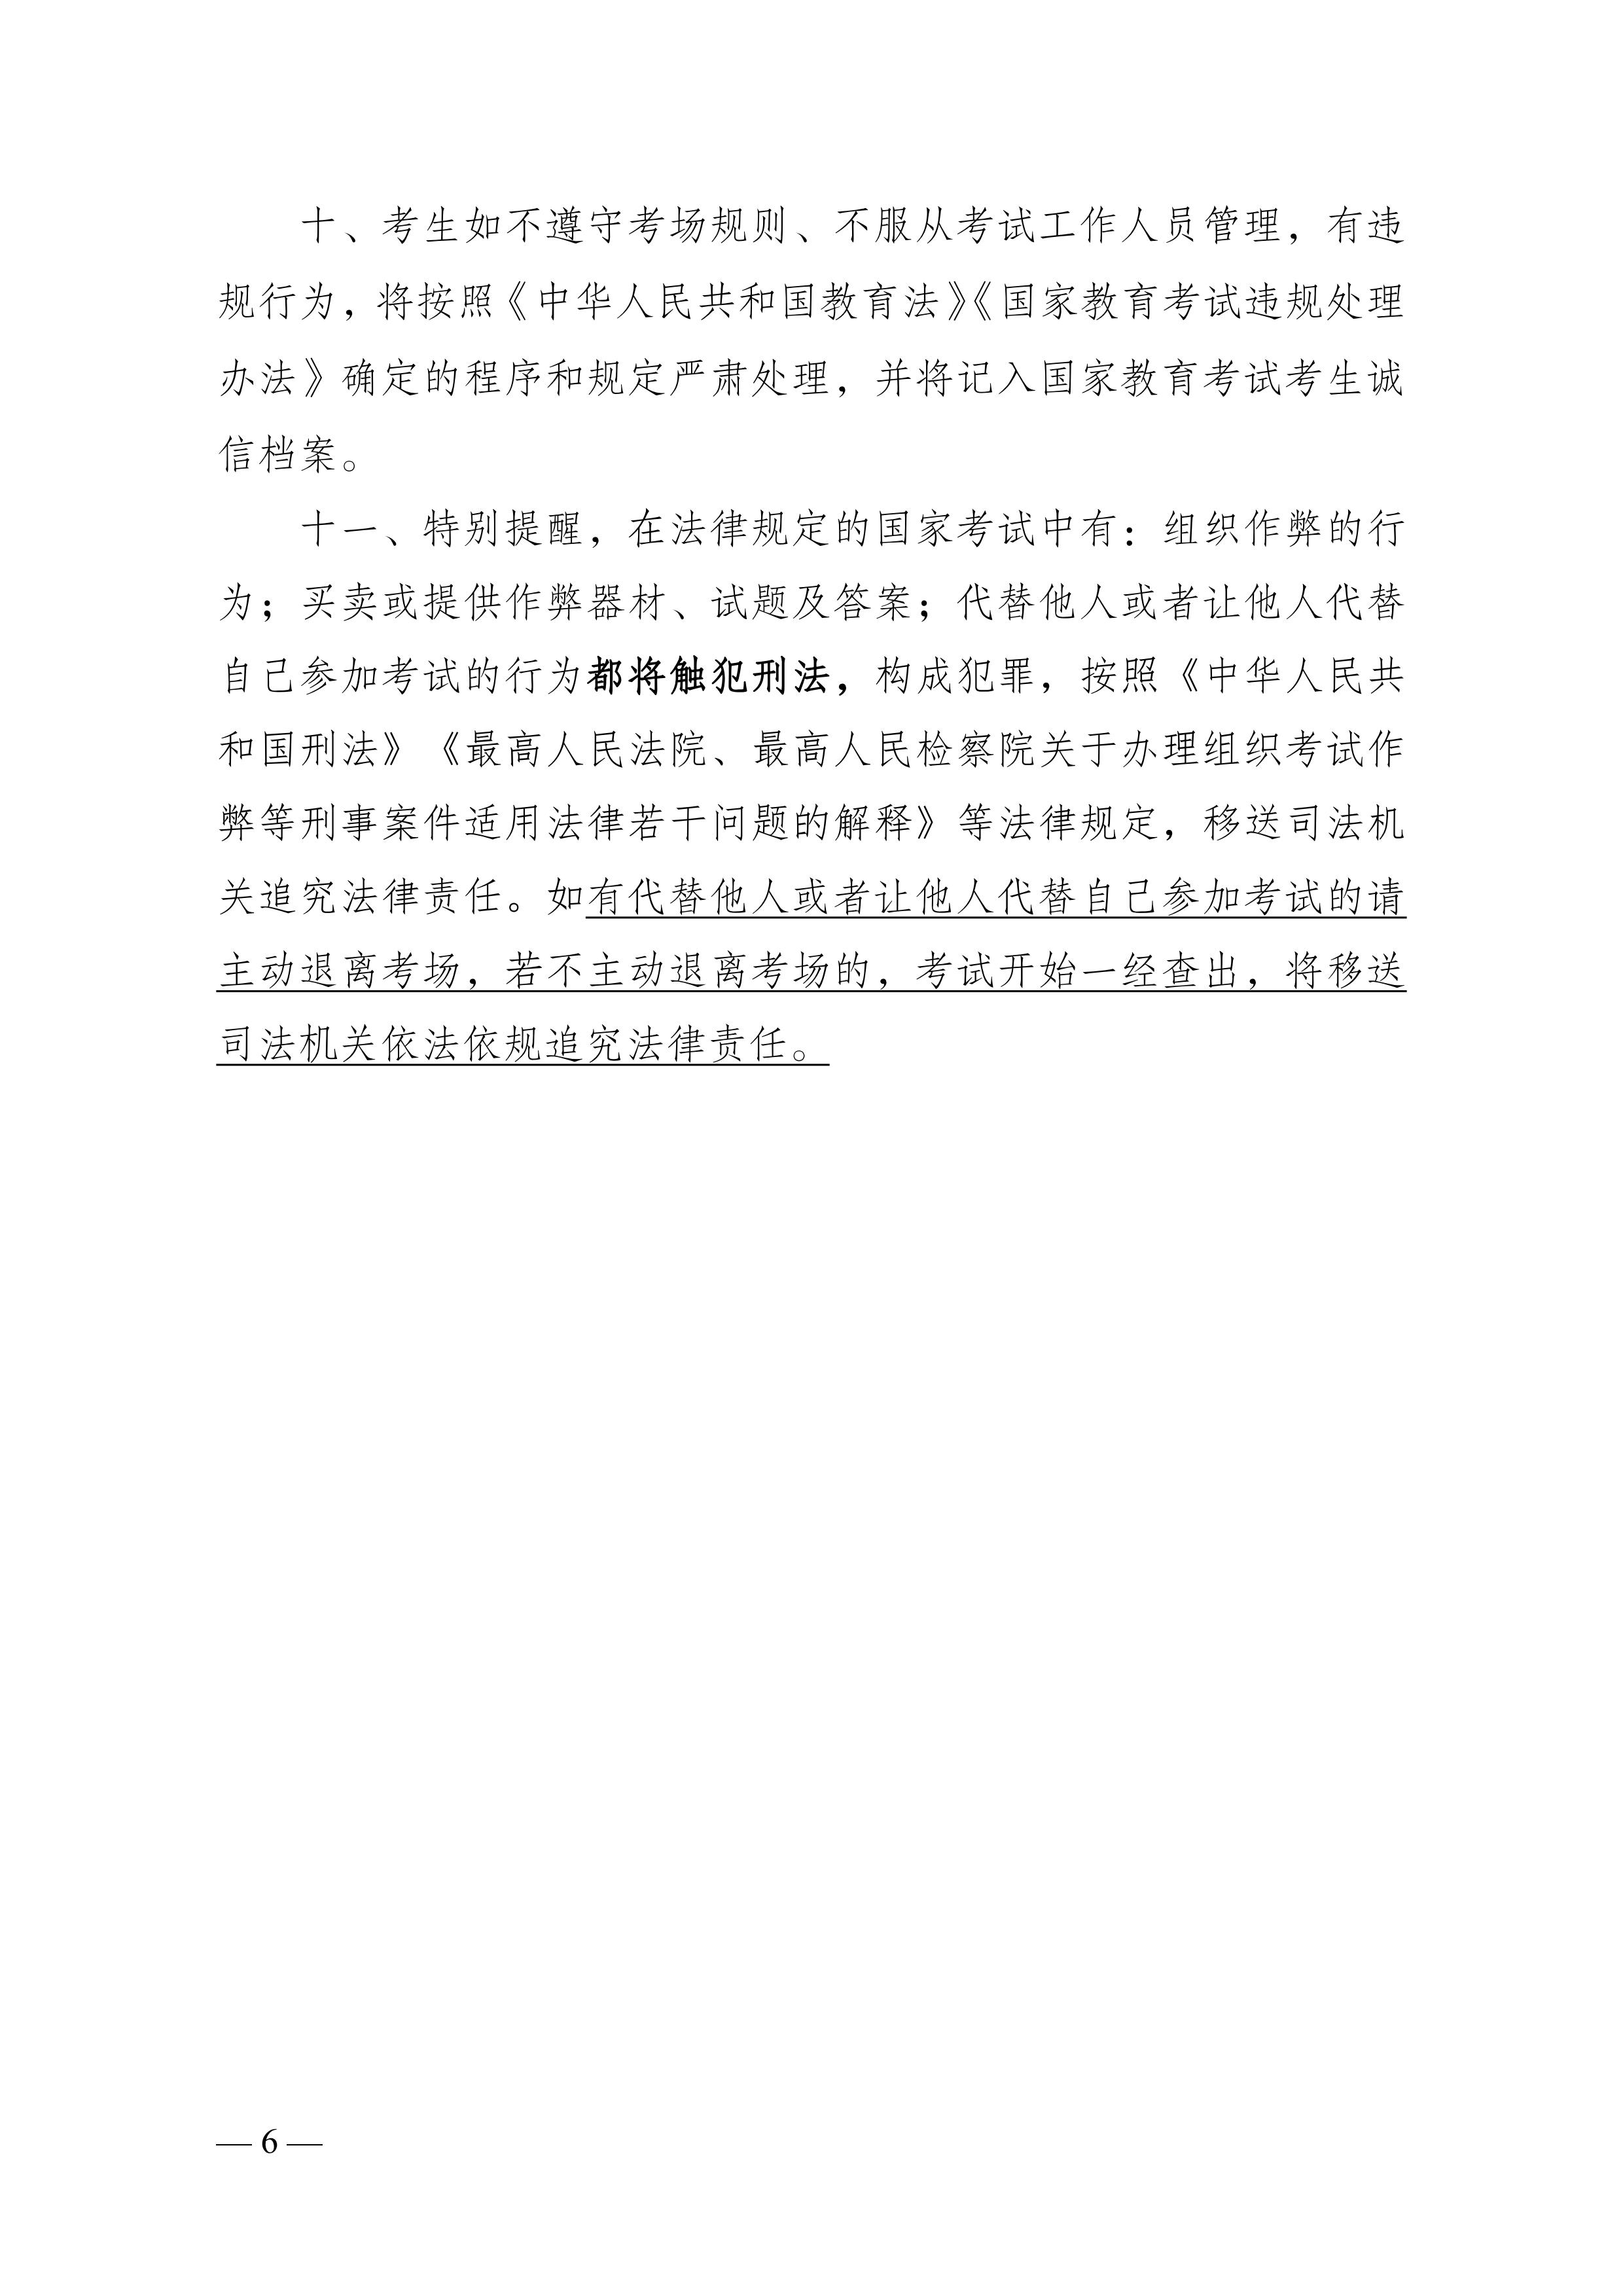 云南省招生考试院关于做好2023年成人高考考生诚信教育有关工作的通知_05.jpg